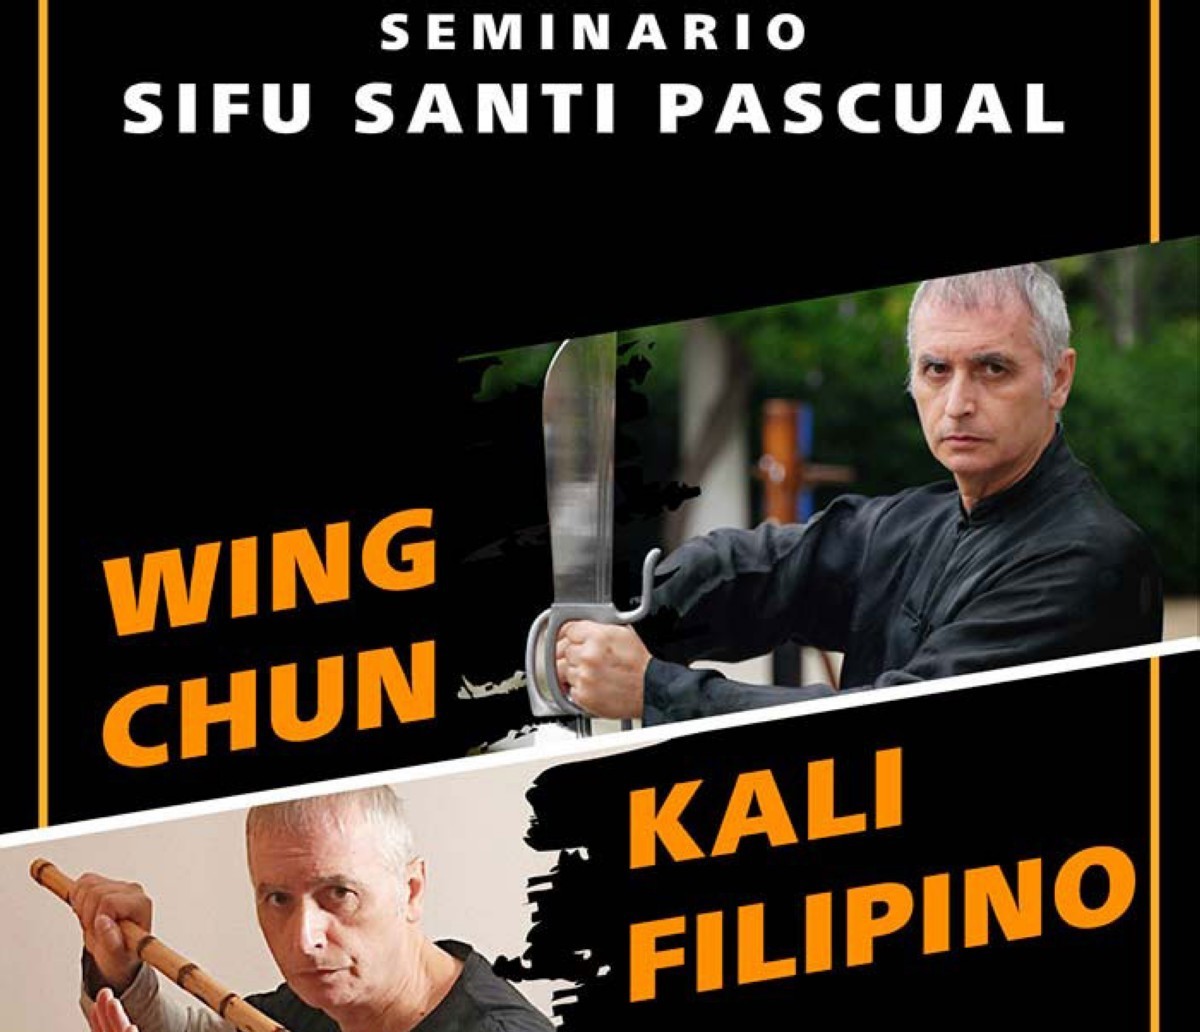 Seminario de Wing Chun y Kali Filipino en Almería